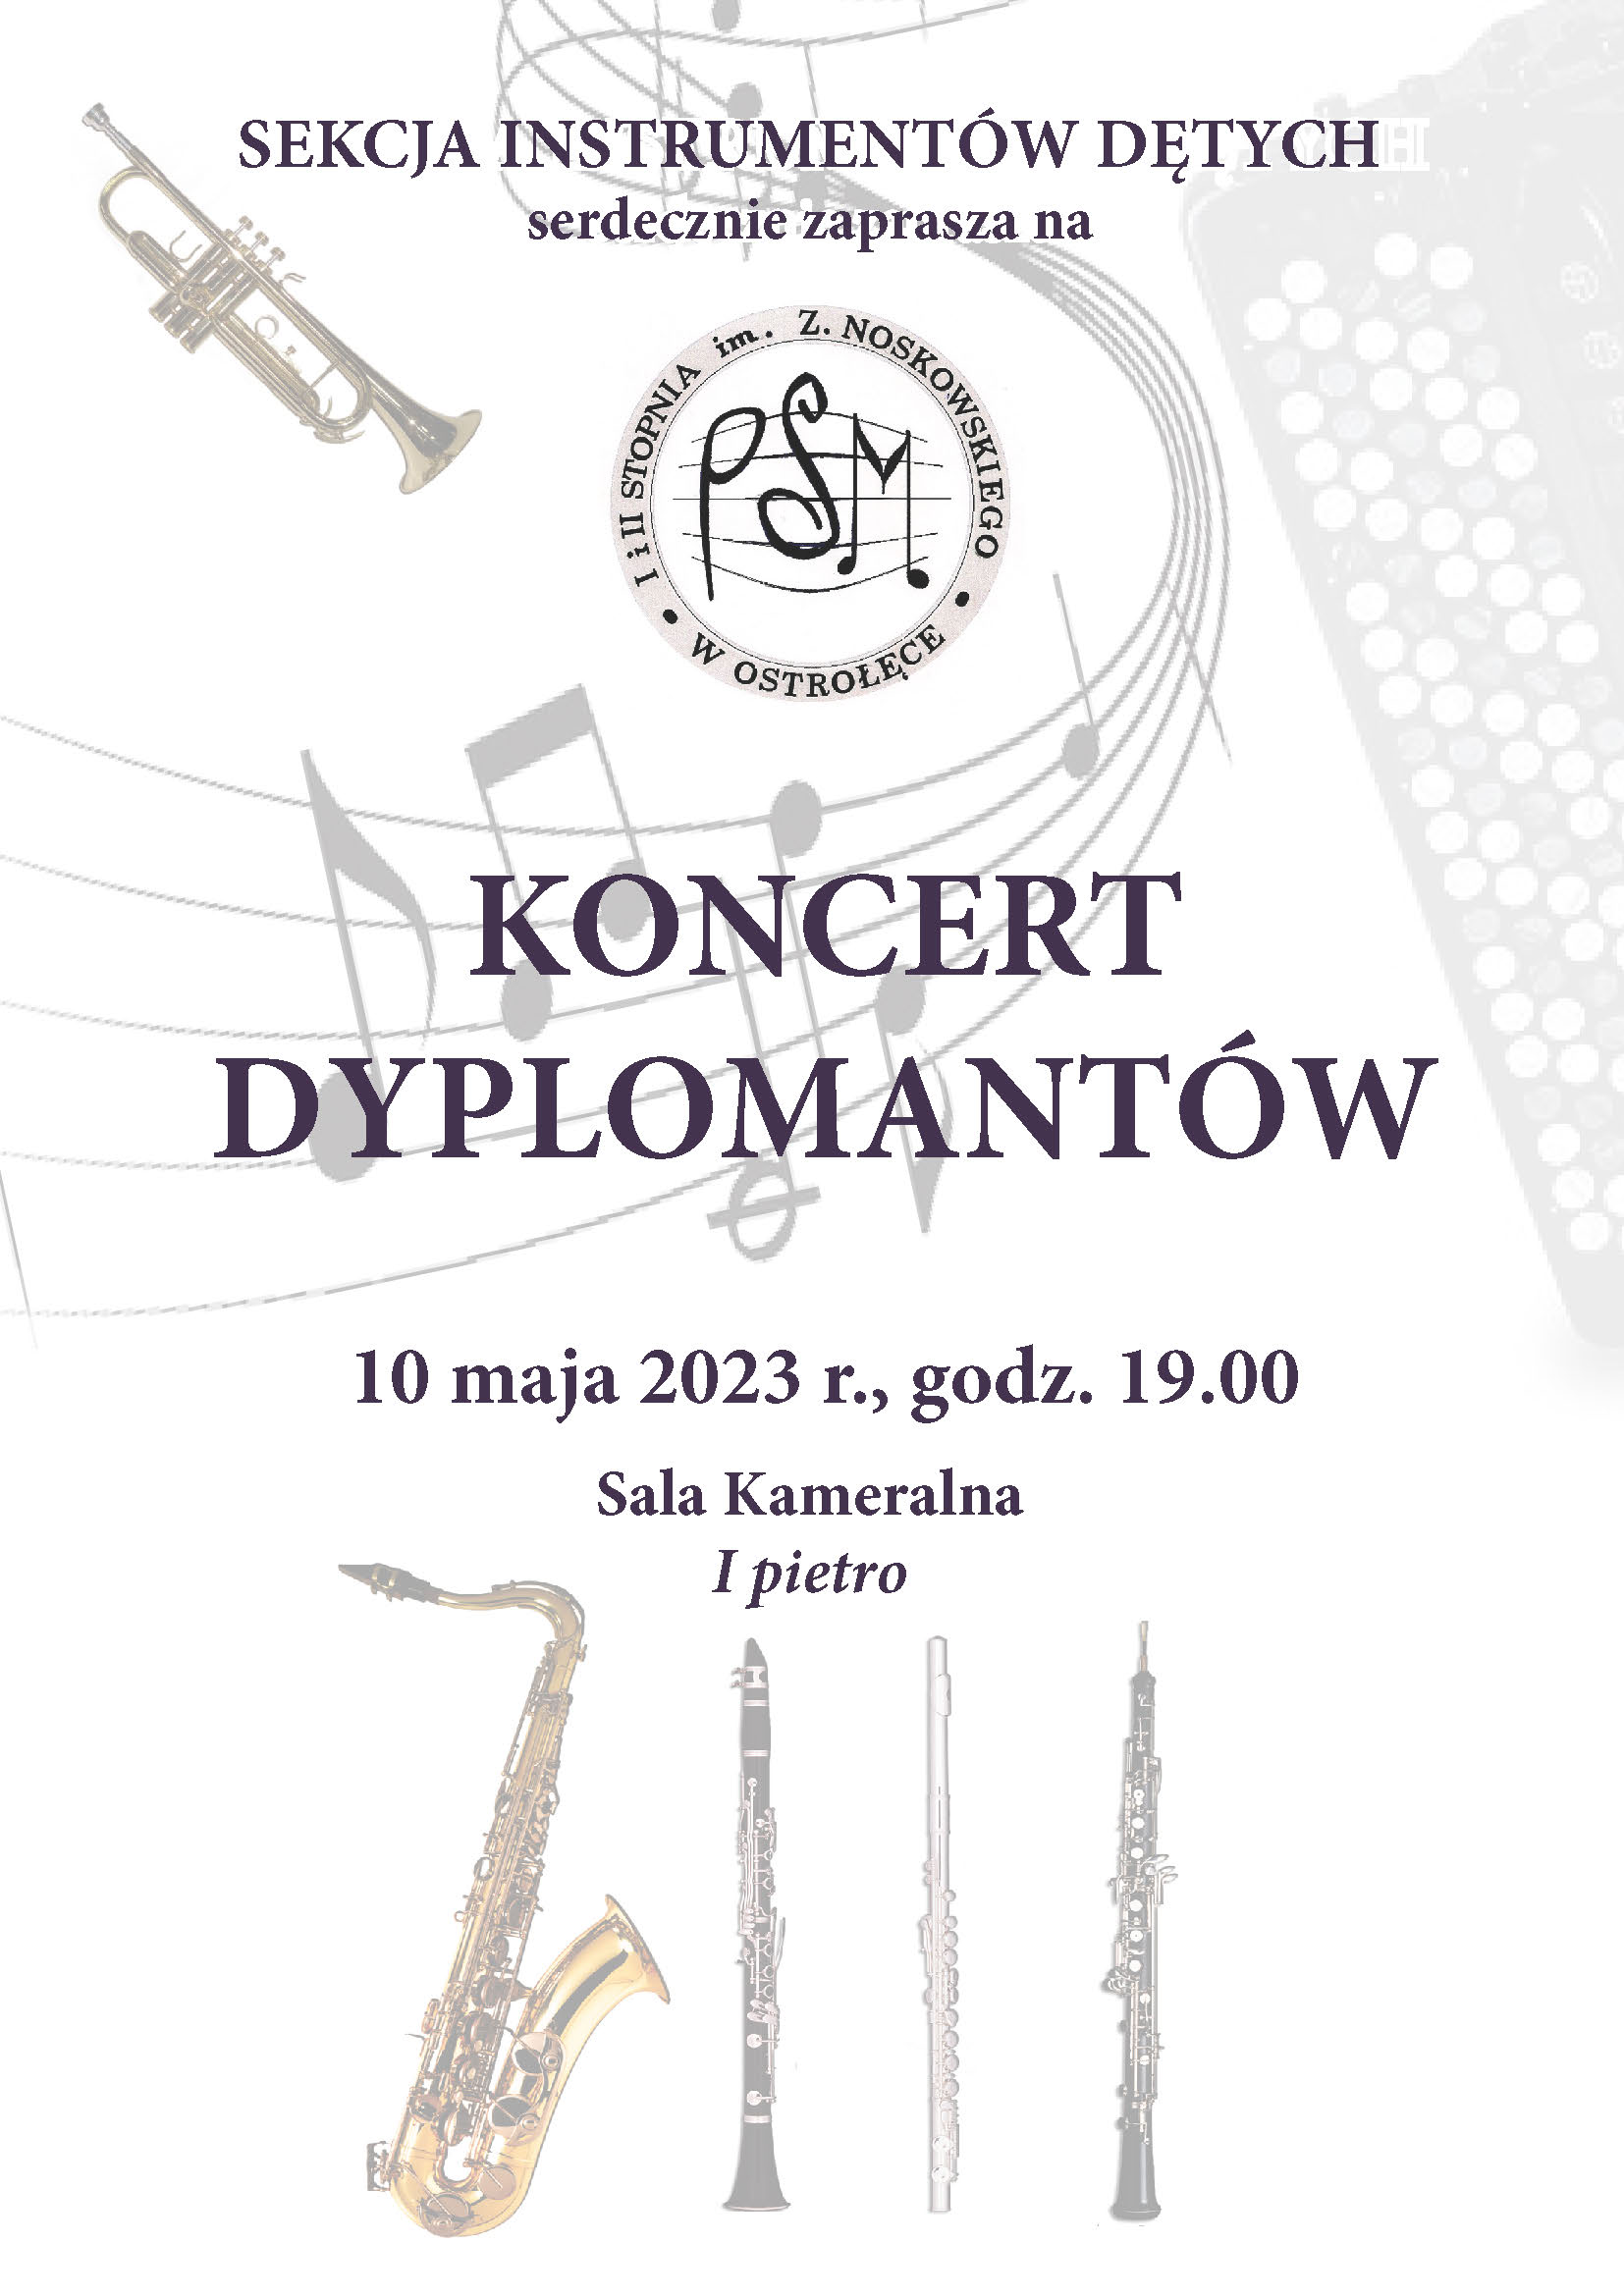 Sekcja Instrumentów Dętych zaprasza na Koncert dyplomantów - 10 maja 2023 r., godz. 19.00; Sala kameralna I piętro